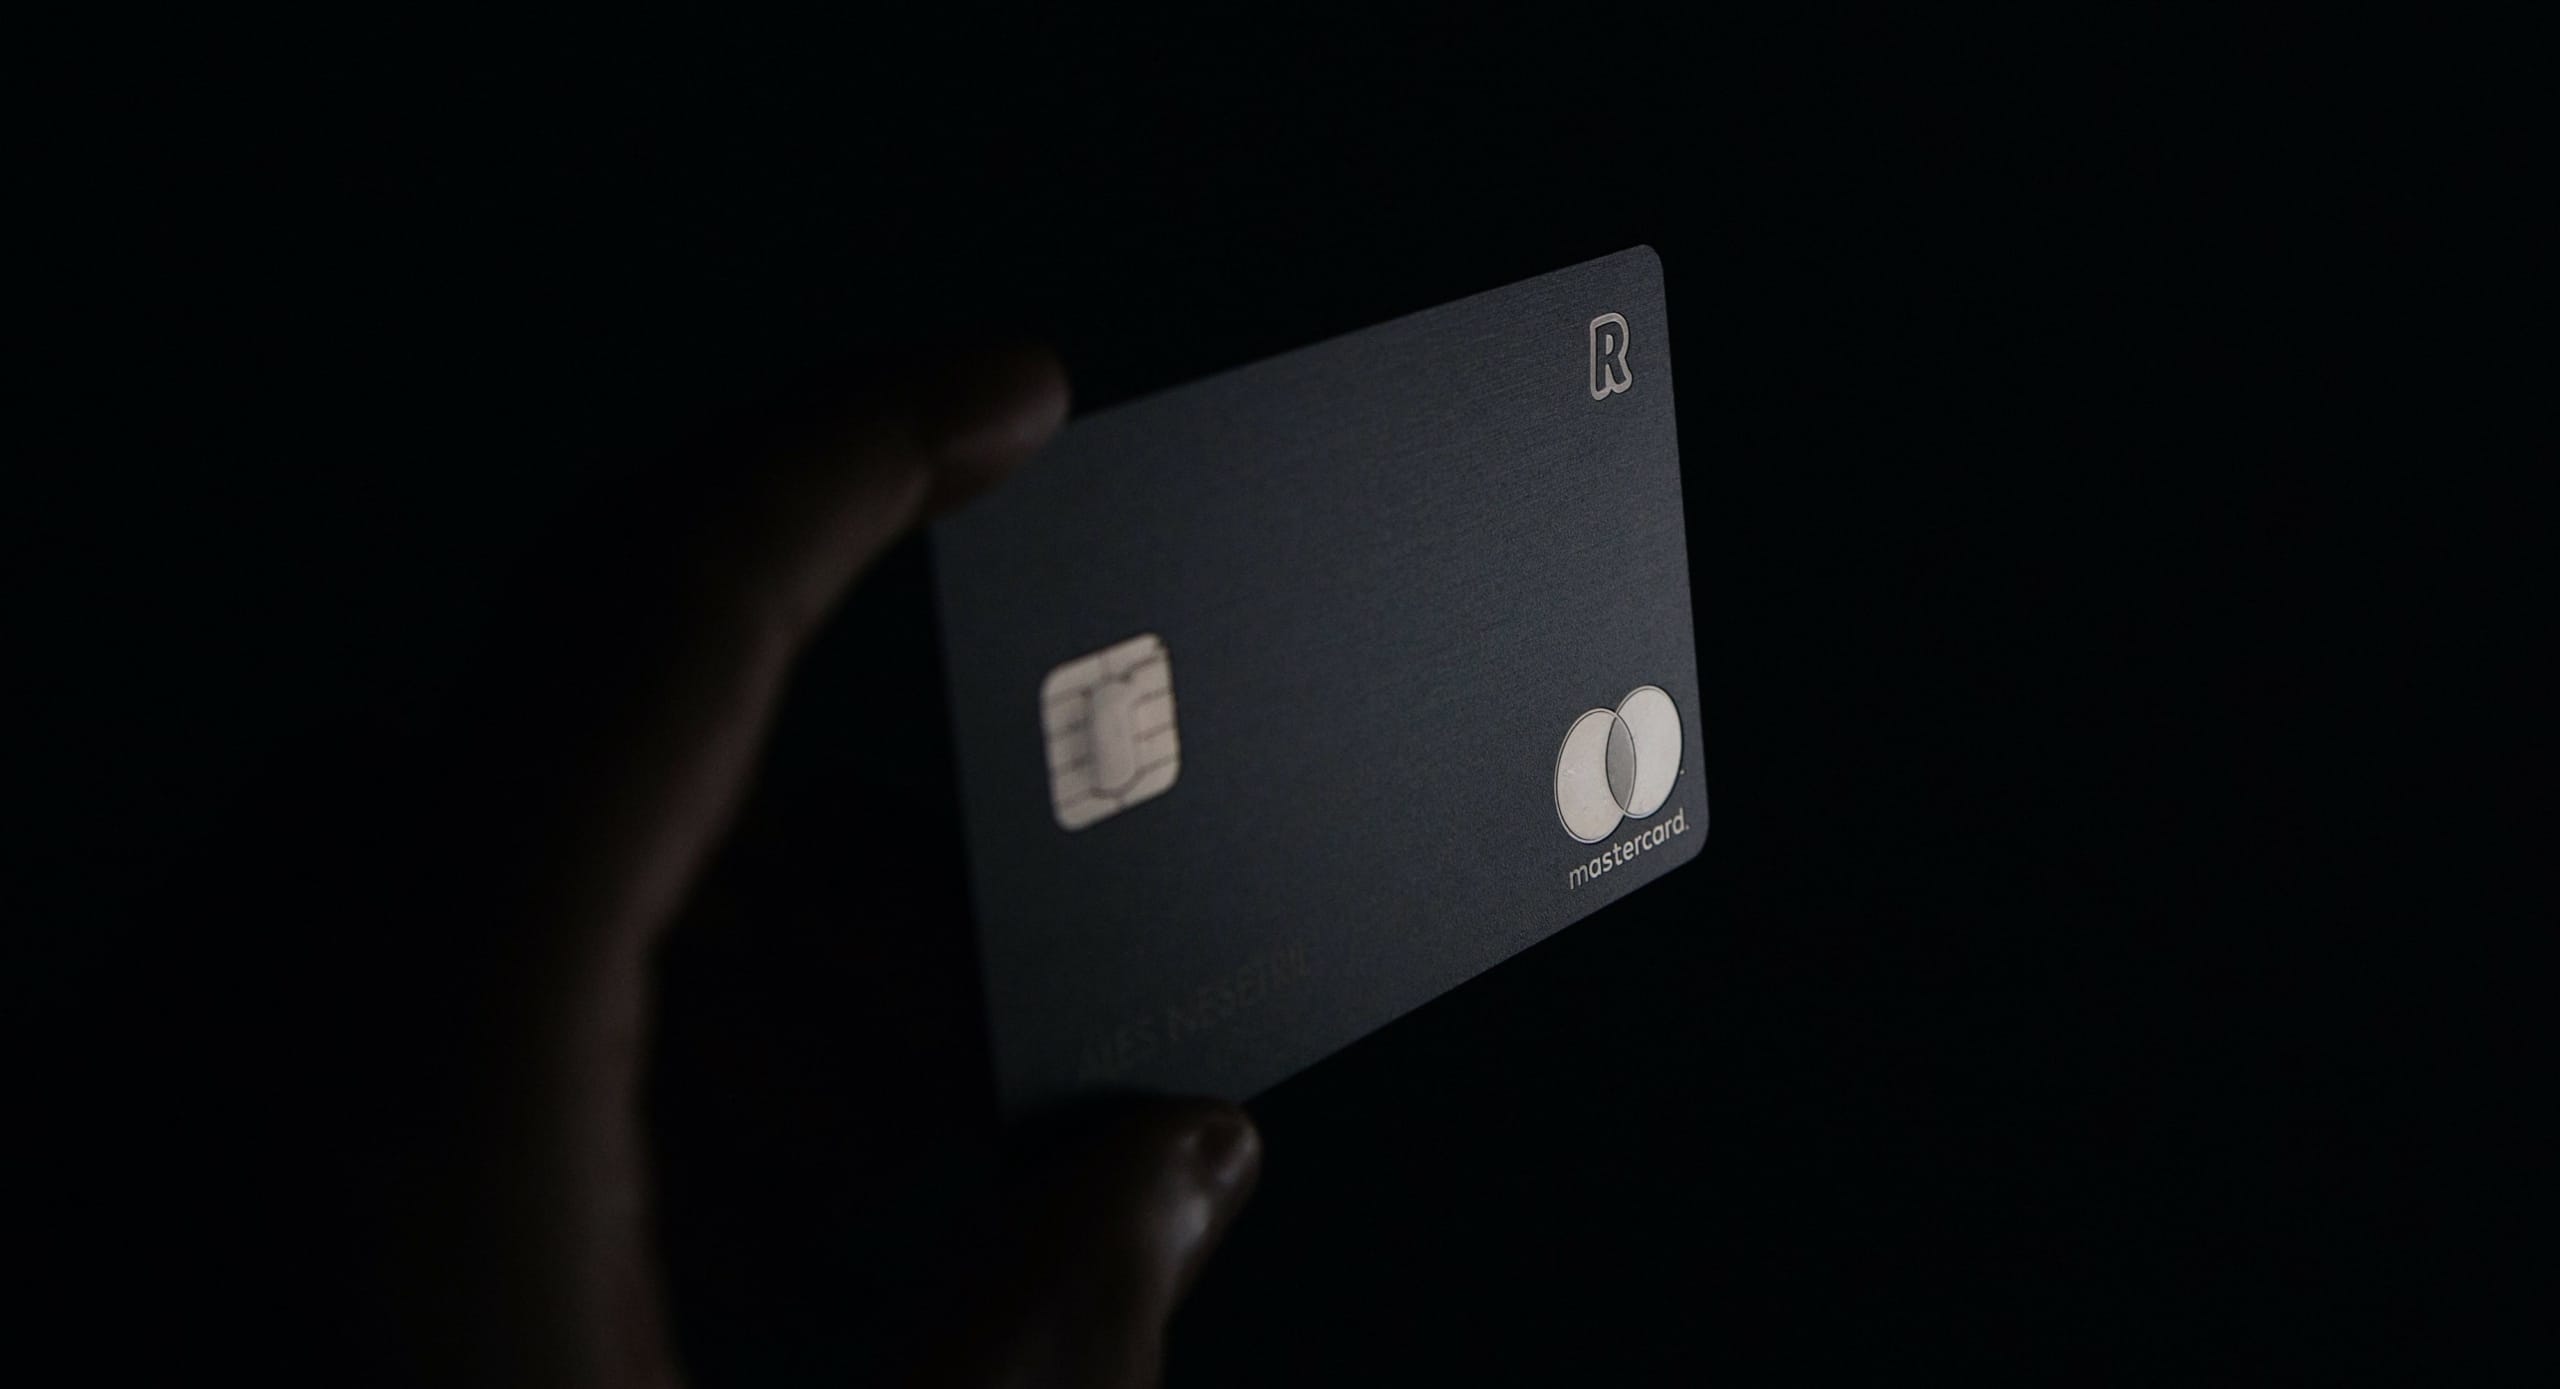 MONACObet platobne karty kreditne karty